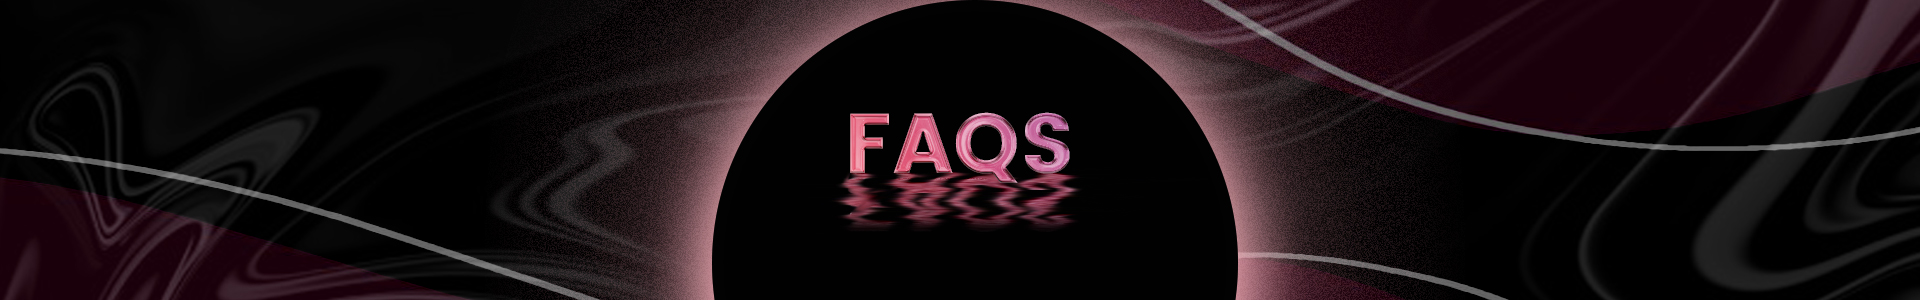 Ii-FAQs